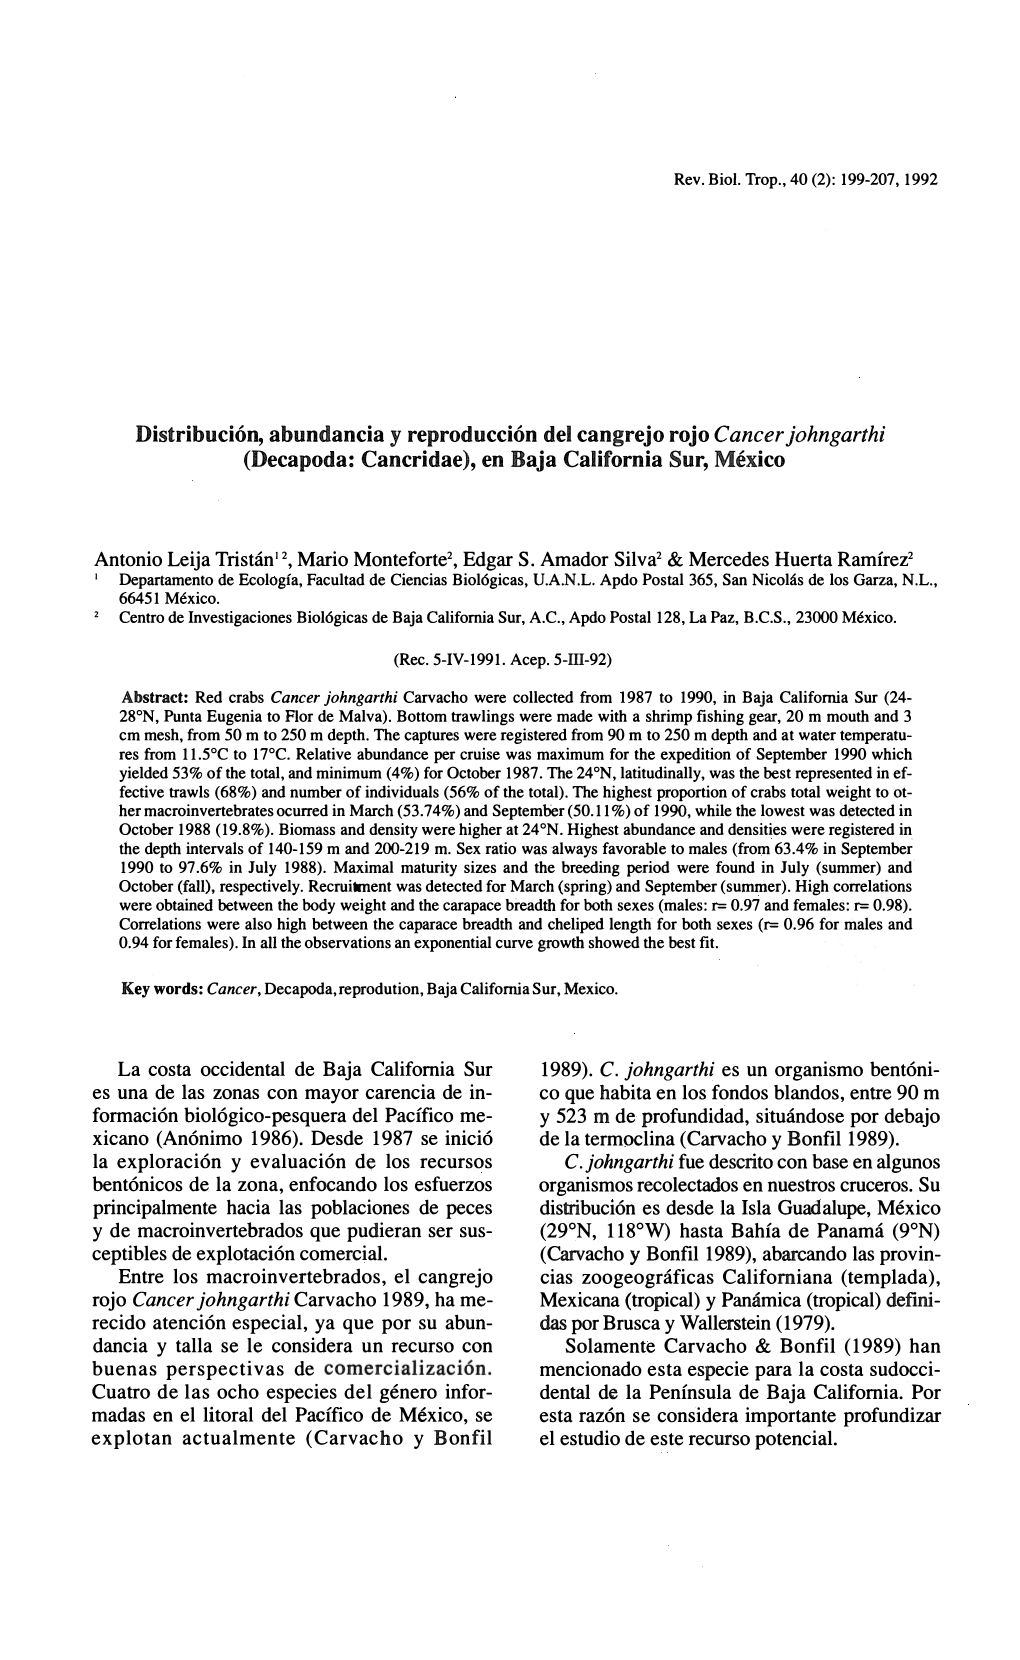 Distribución, Abundancia Y Reproducción Del Cangrejo Rojo Caneer Johngarthi (Decapoda: Cancridae), En Baja California Sur, México